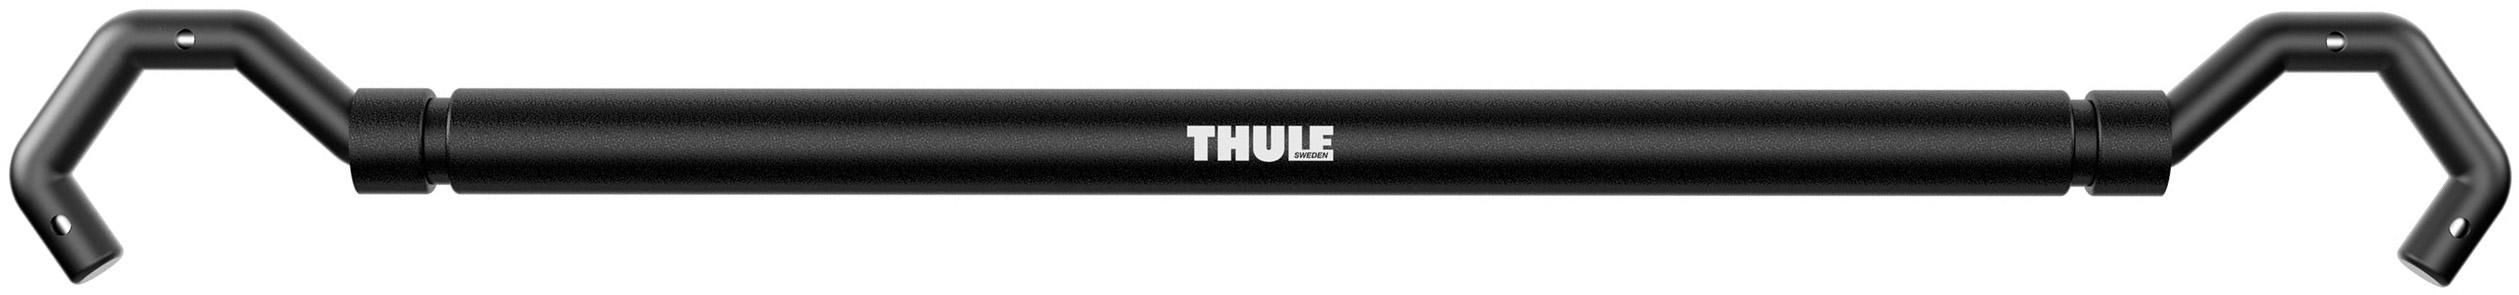 Thule Bike Frame Adaptor - Black